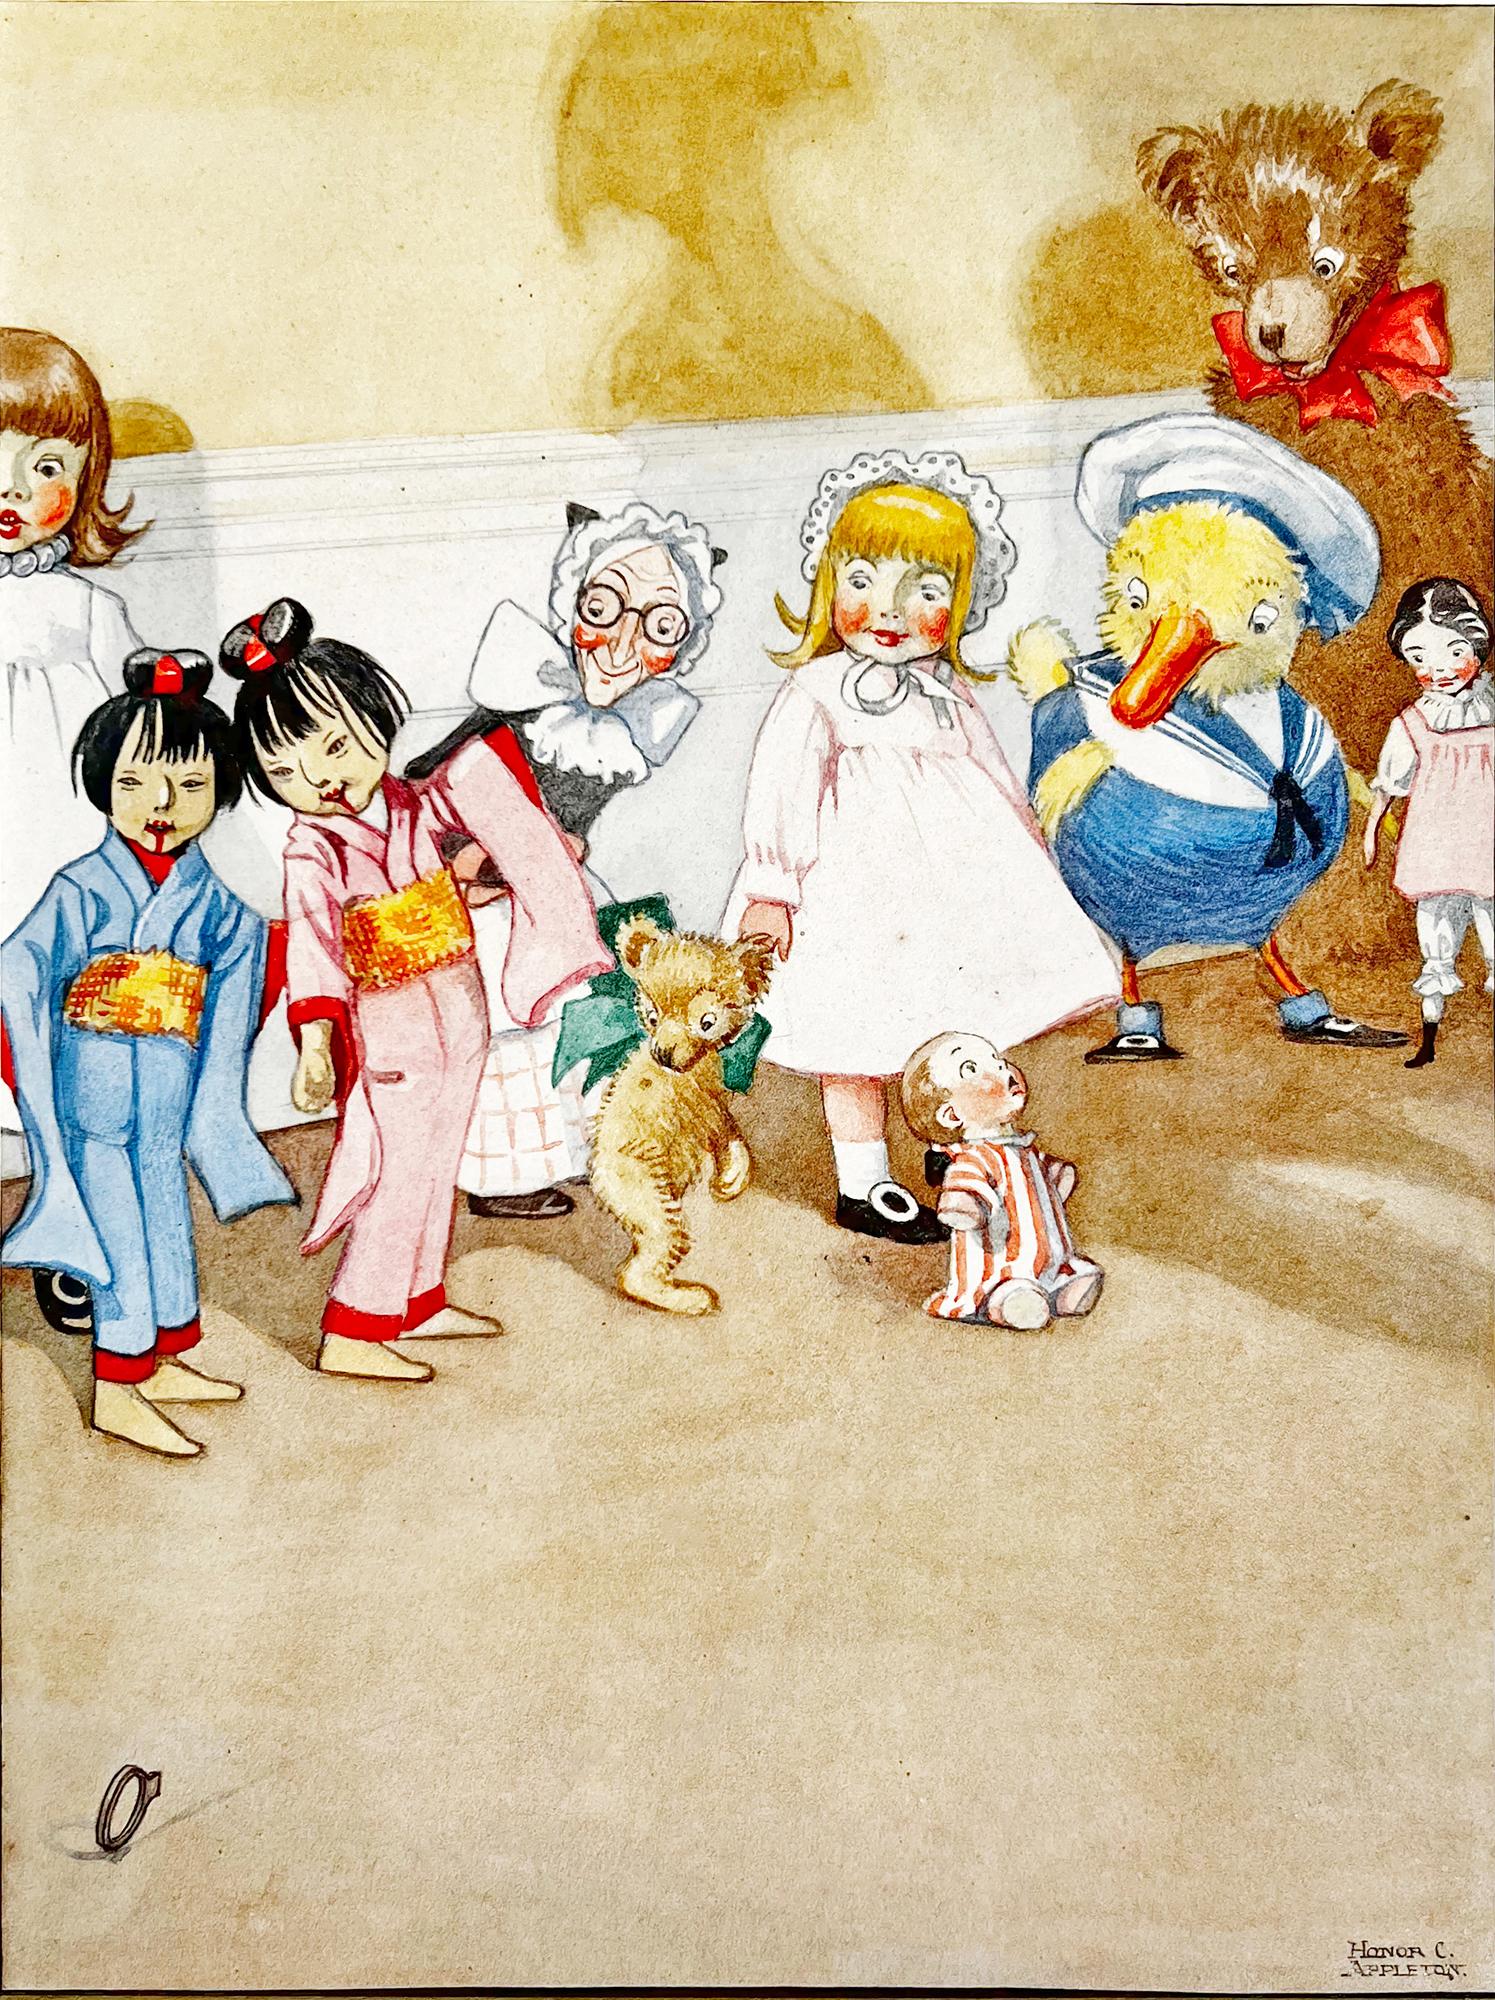 Illustration de livre pour enfants - Illustration d'illustratrice féminine britannique - Ours en peluche